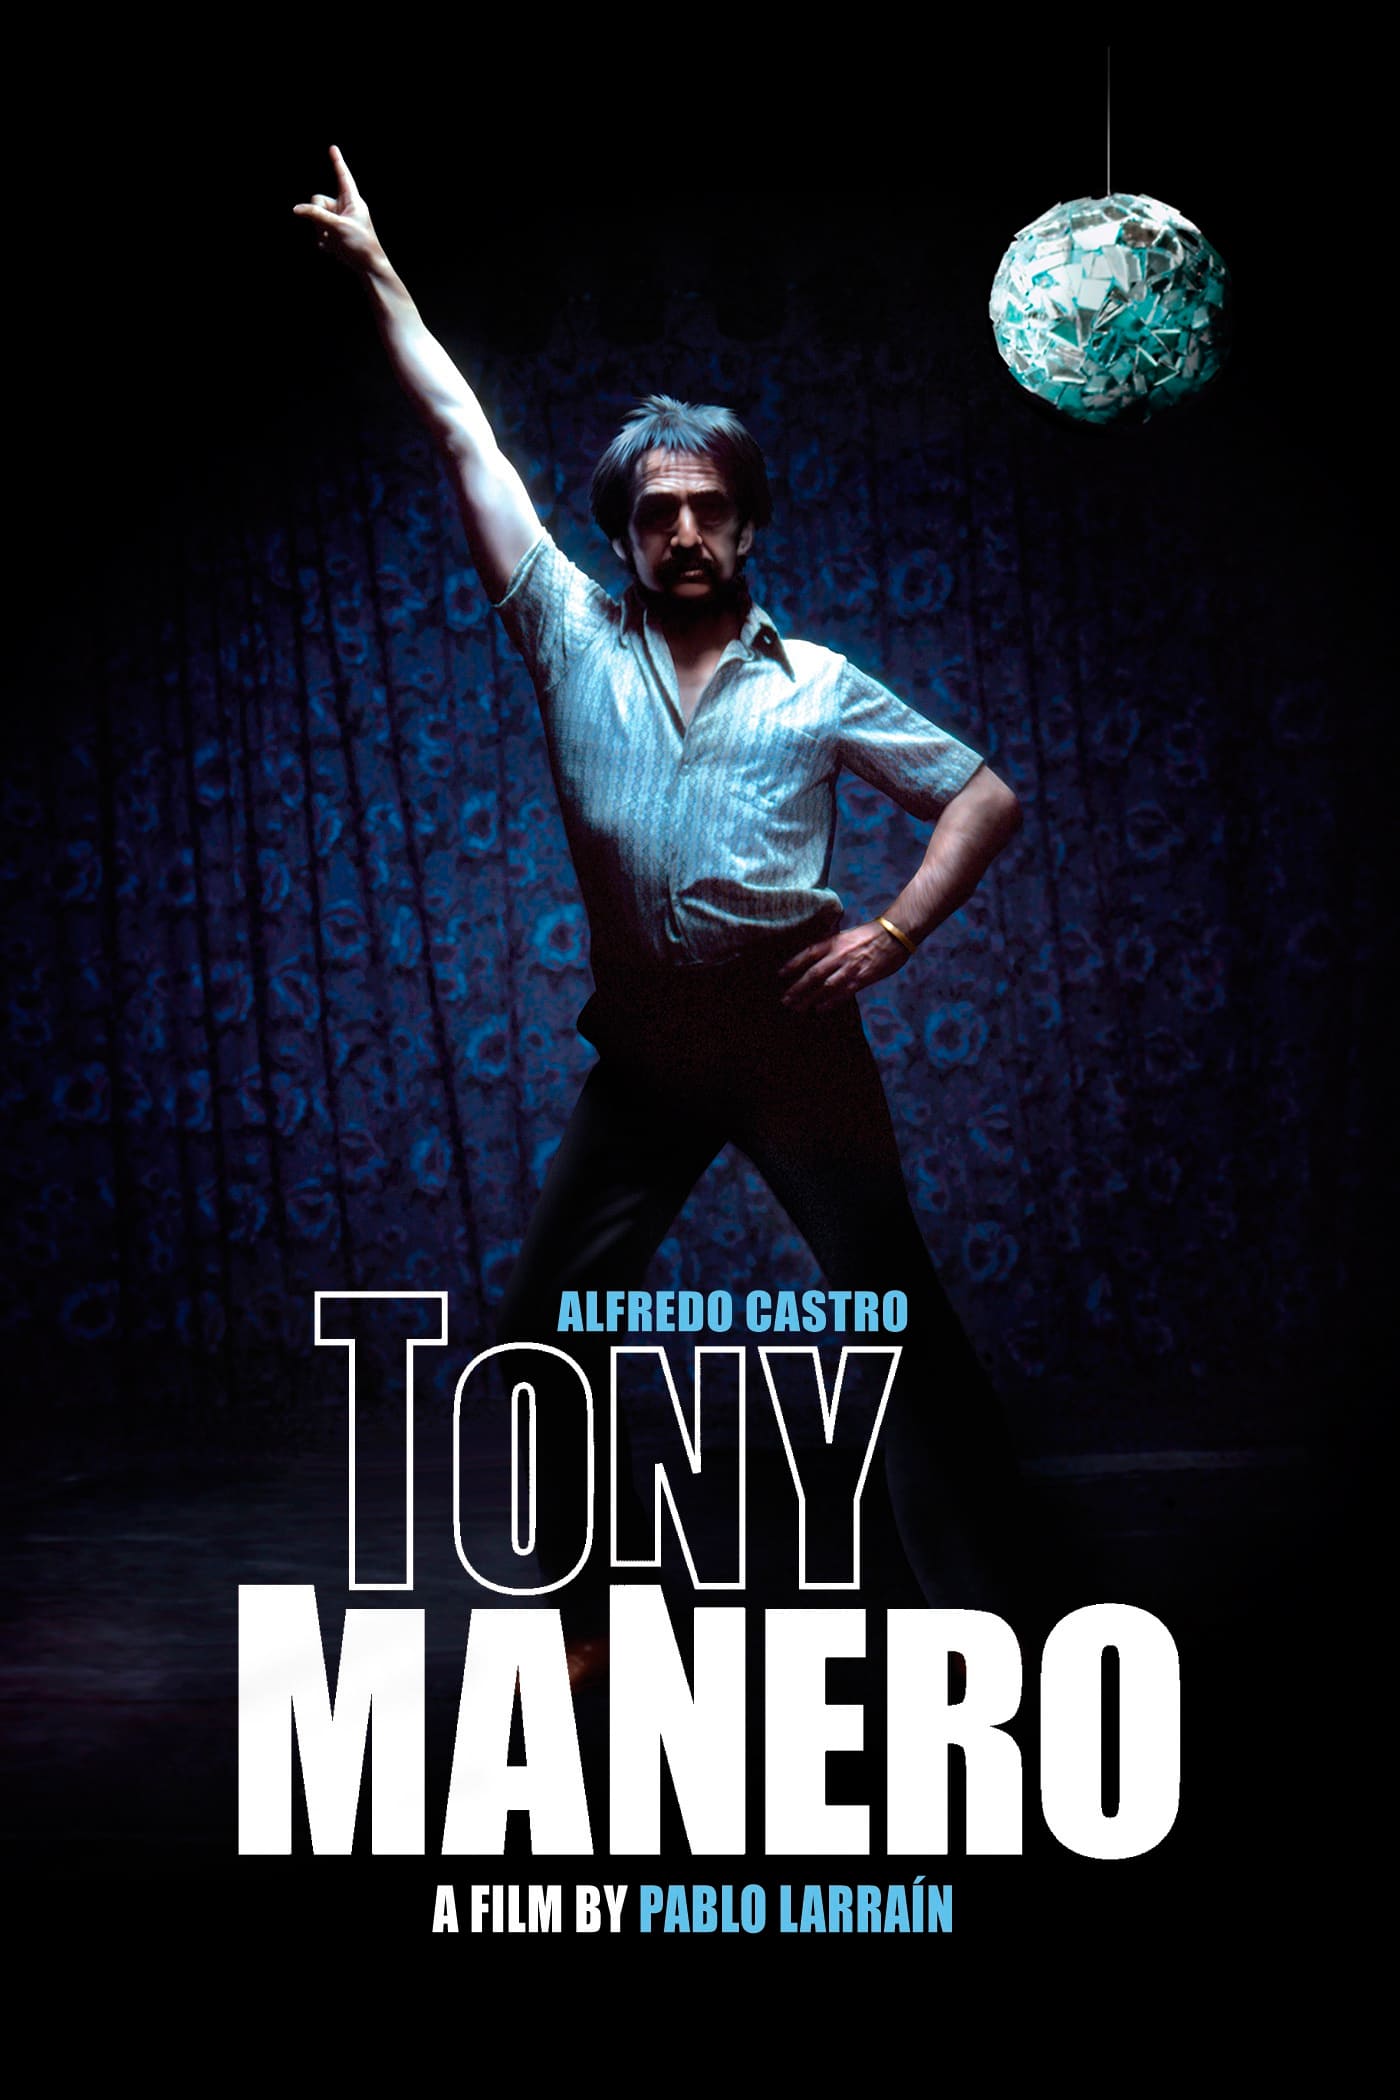 Tony Manero